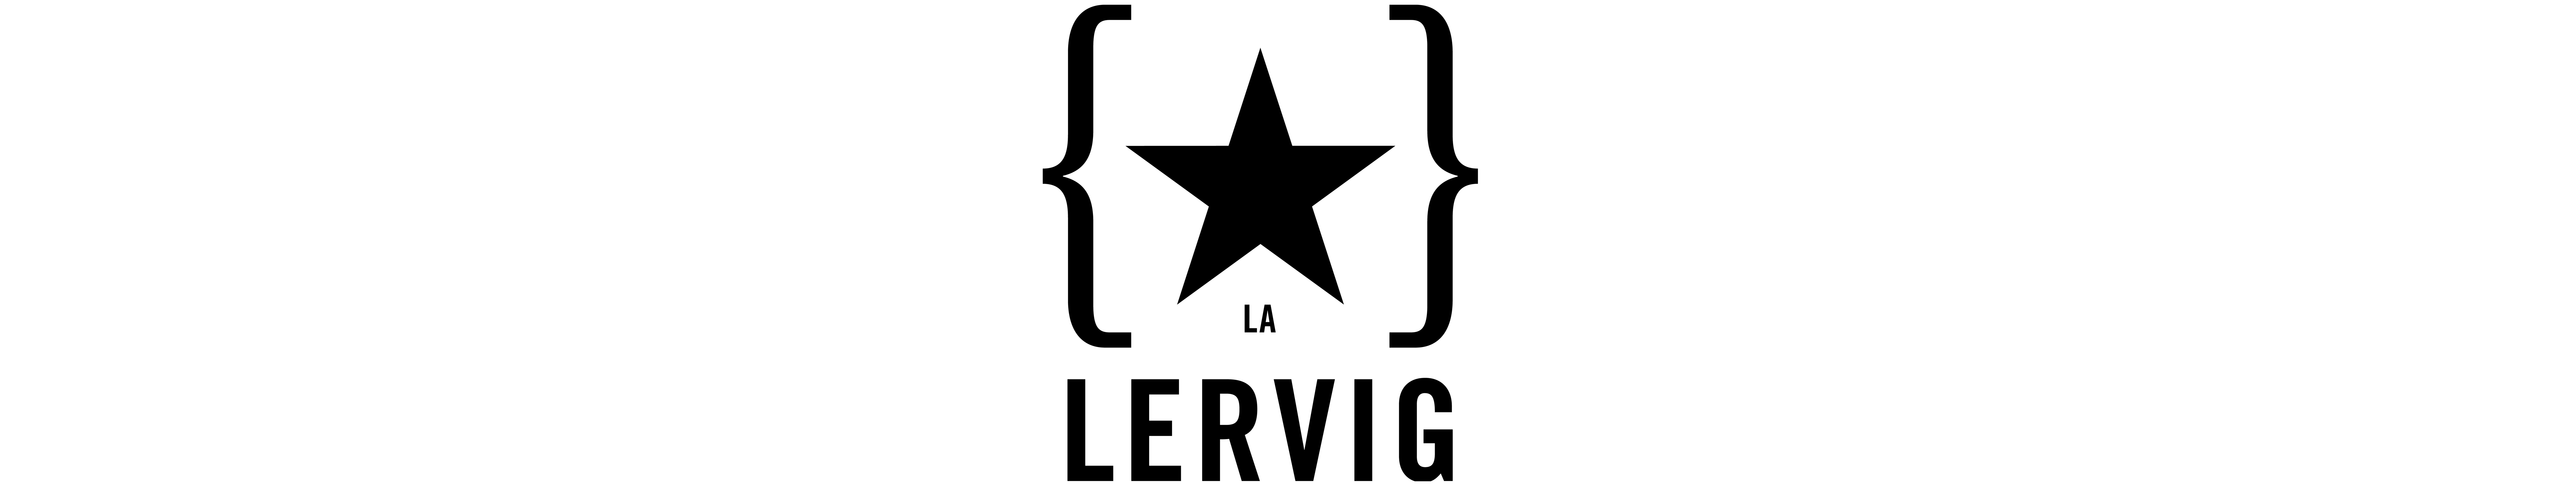 Lervig Brewery